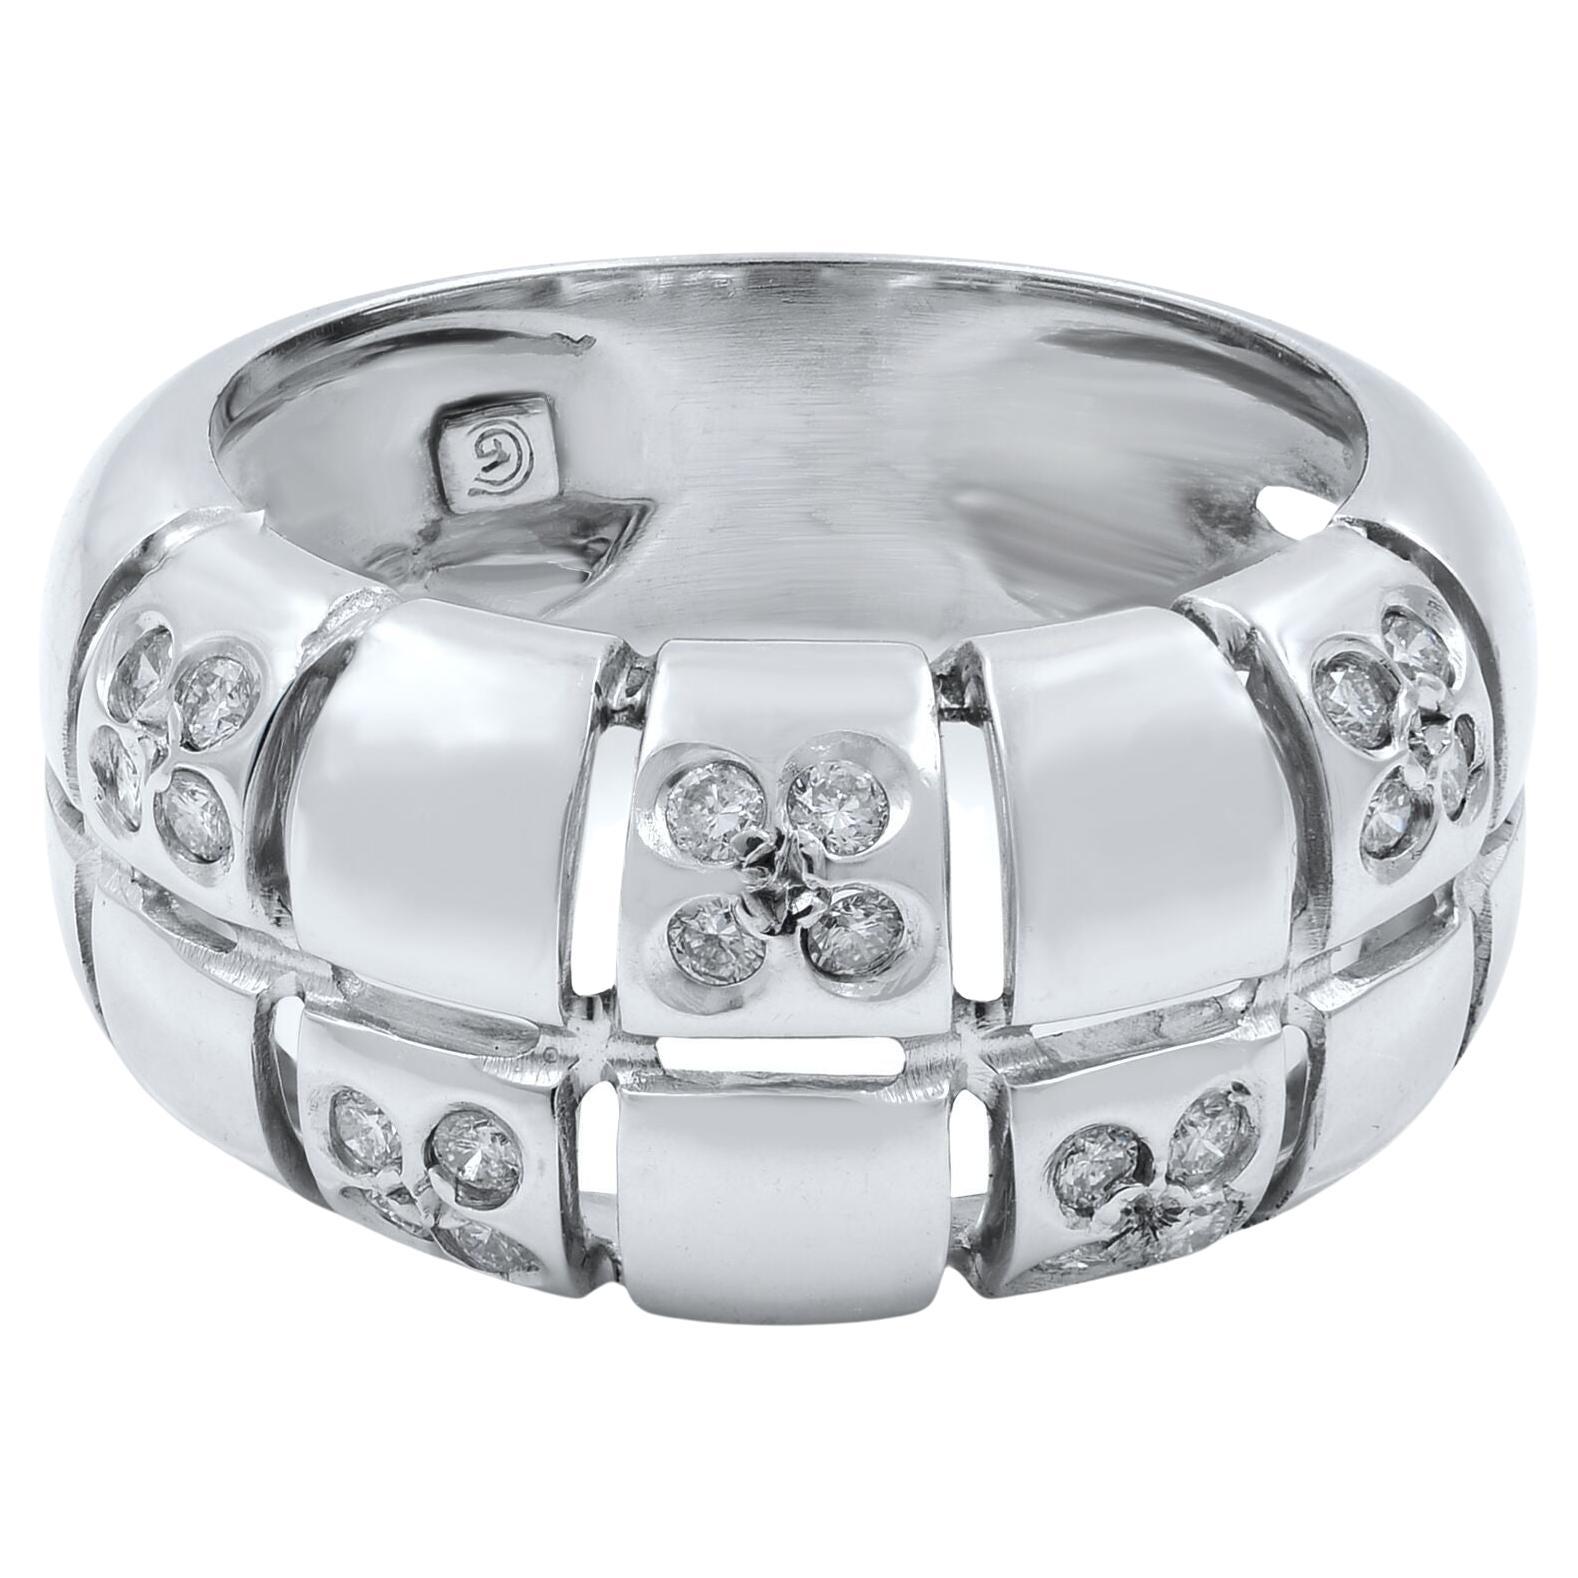 Rachel Koen Diamond Ladies Ring Band 14k White Gold 0.30 Cttw For Sale